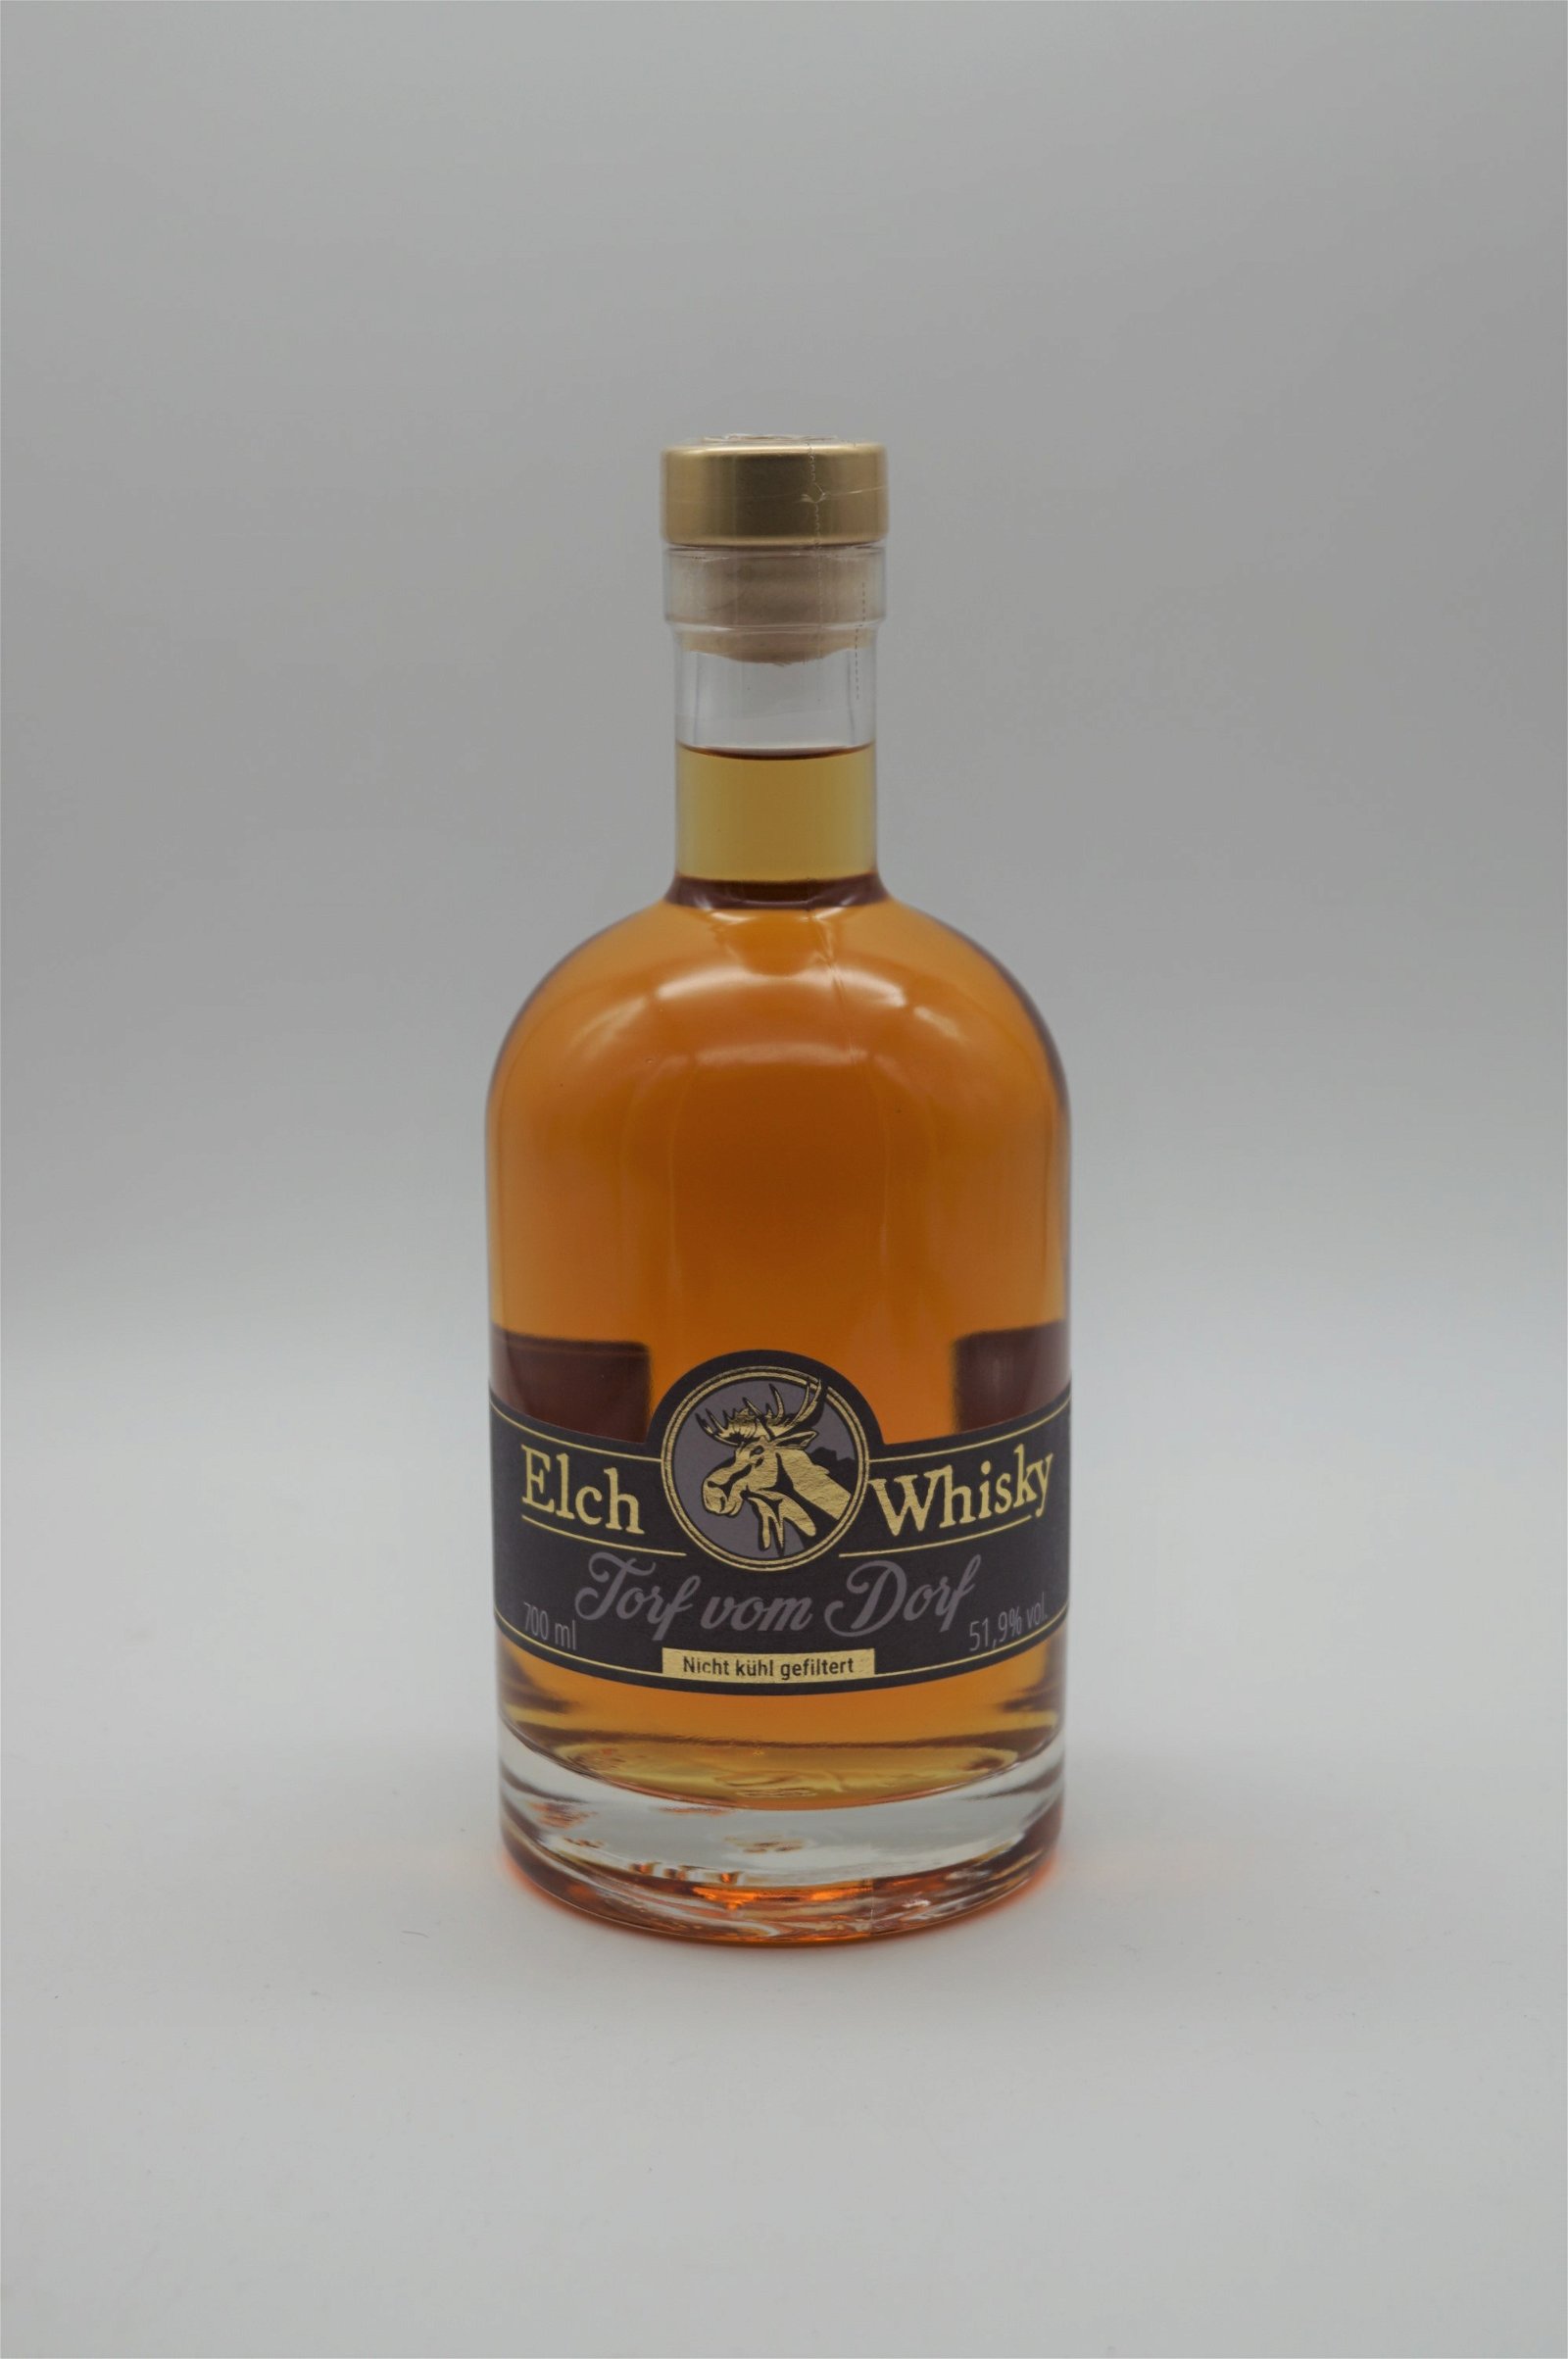 Elch Whisky Torf vom Dorf (Auflage 5)